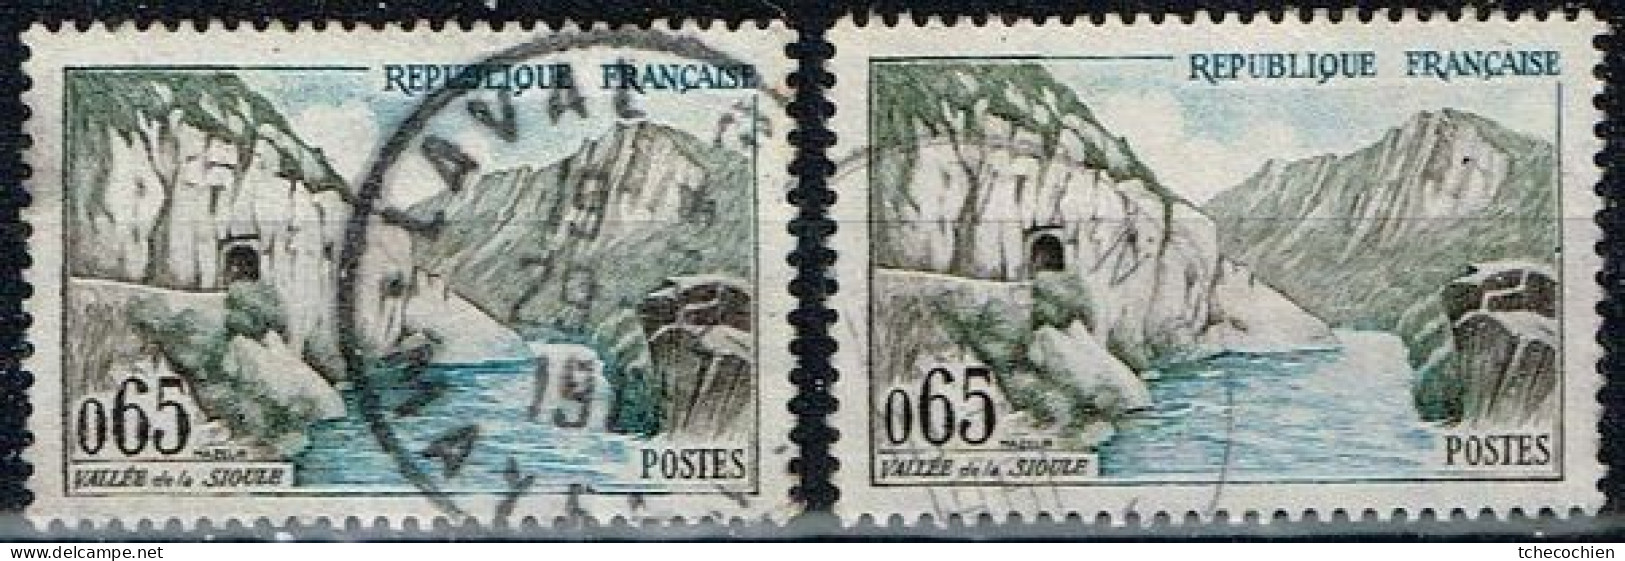 France - 1960 - Y&T N° 1239, Oblitéré. Couleur Bleu Très Pâle - Oblitérés